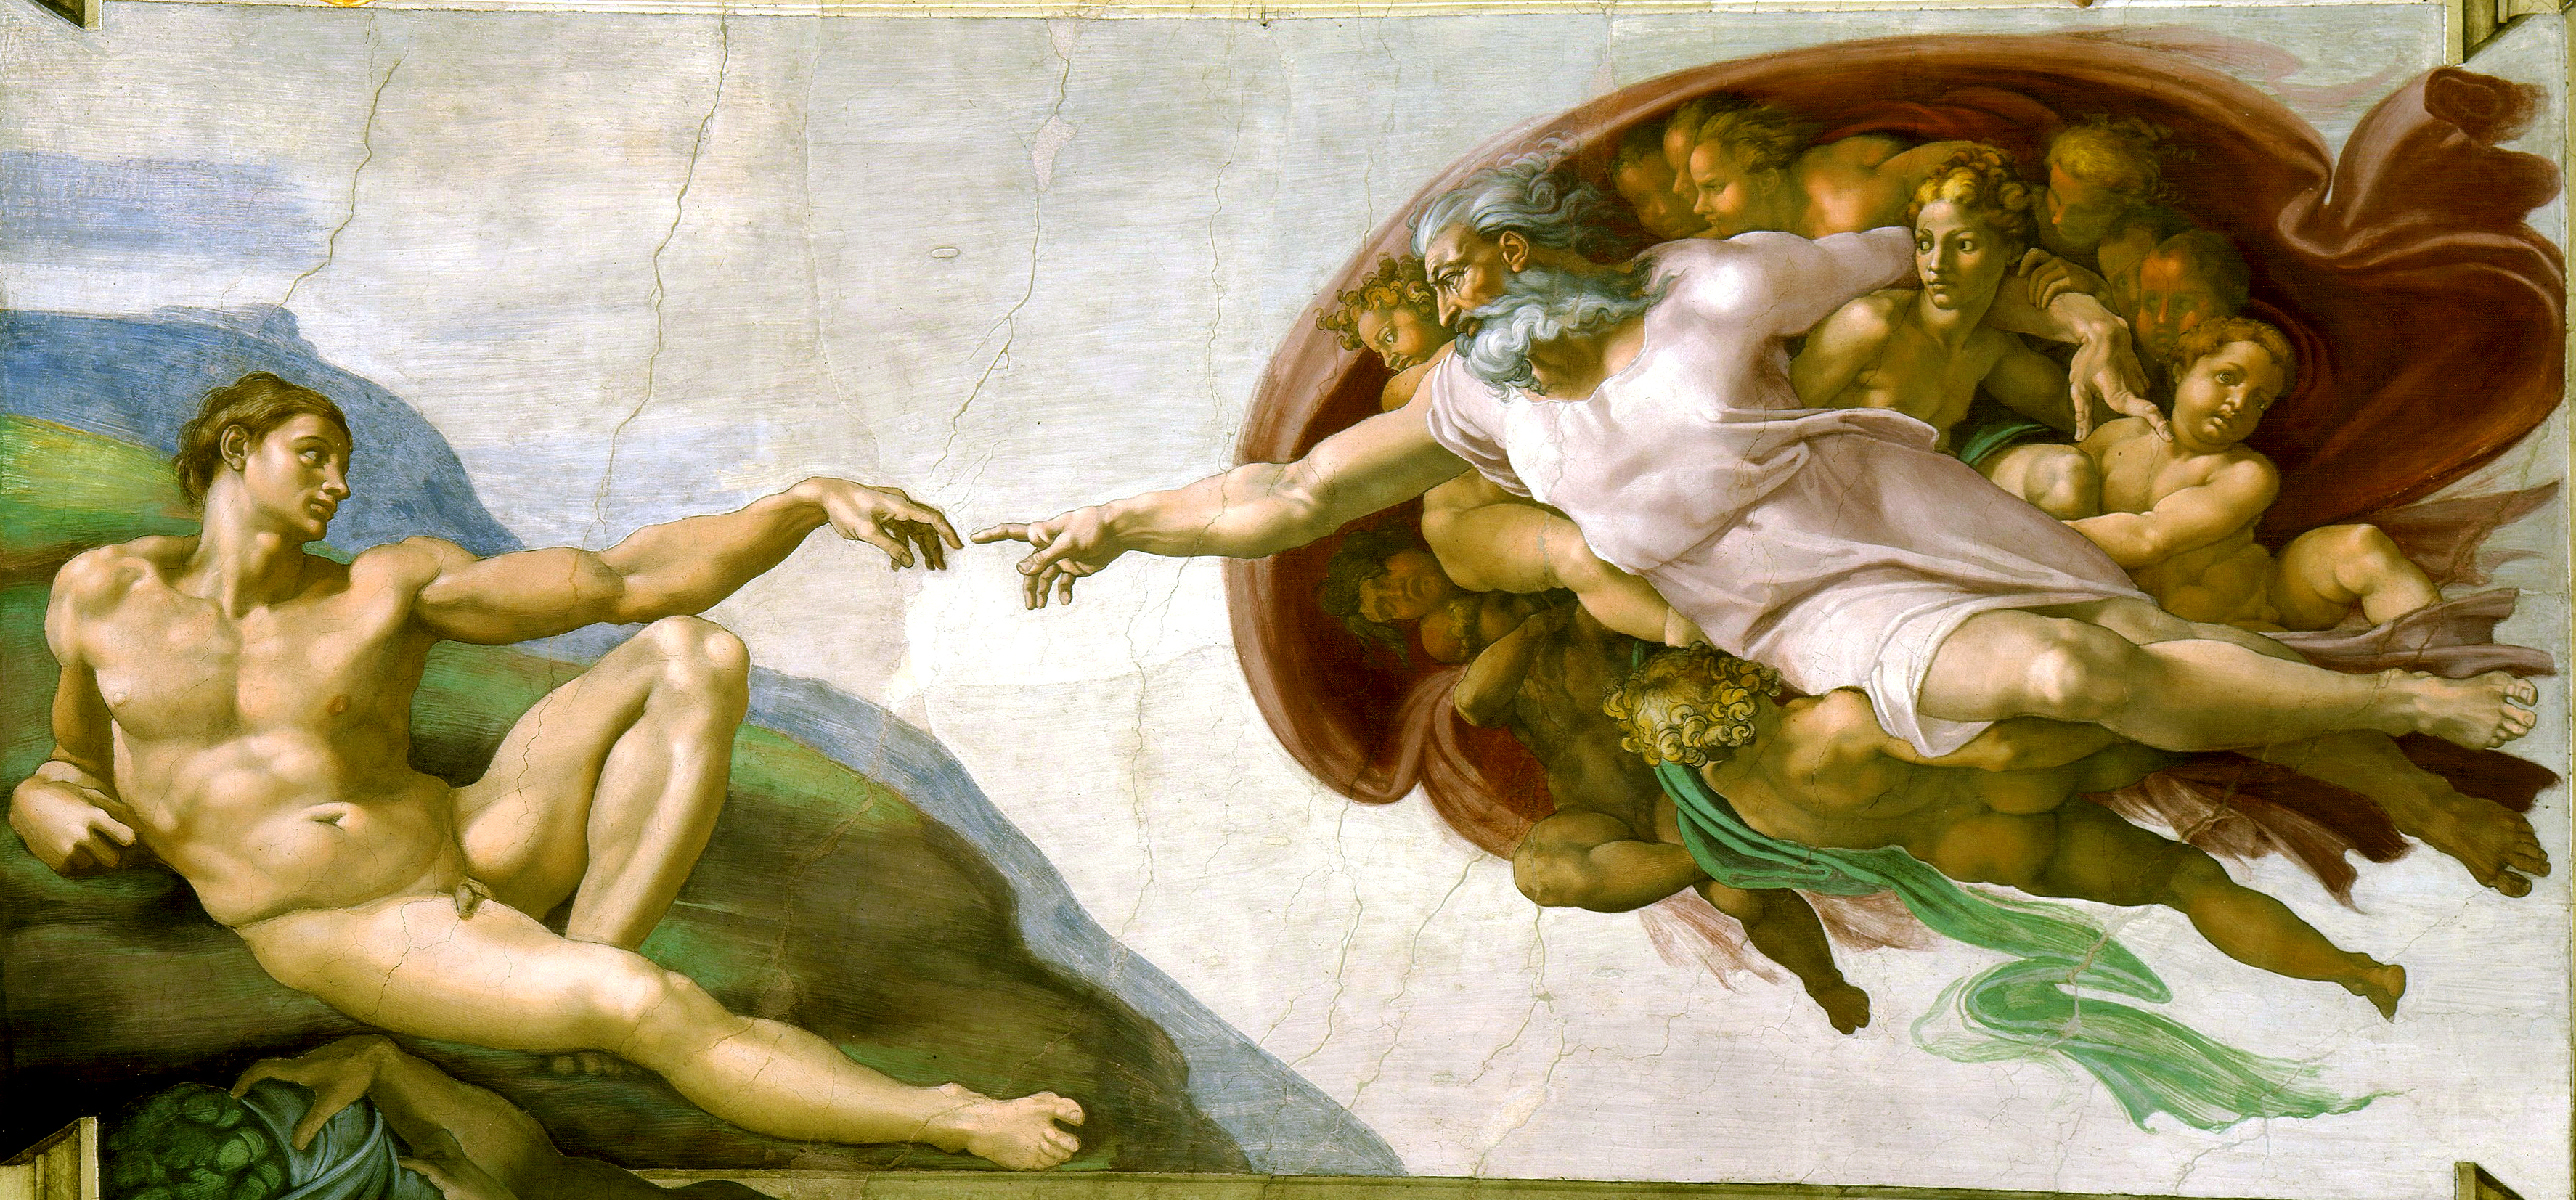 http://en.wikipedia.org/wiki/Michelangelo#Works